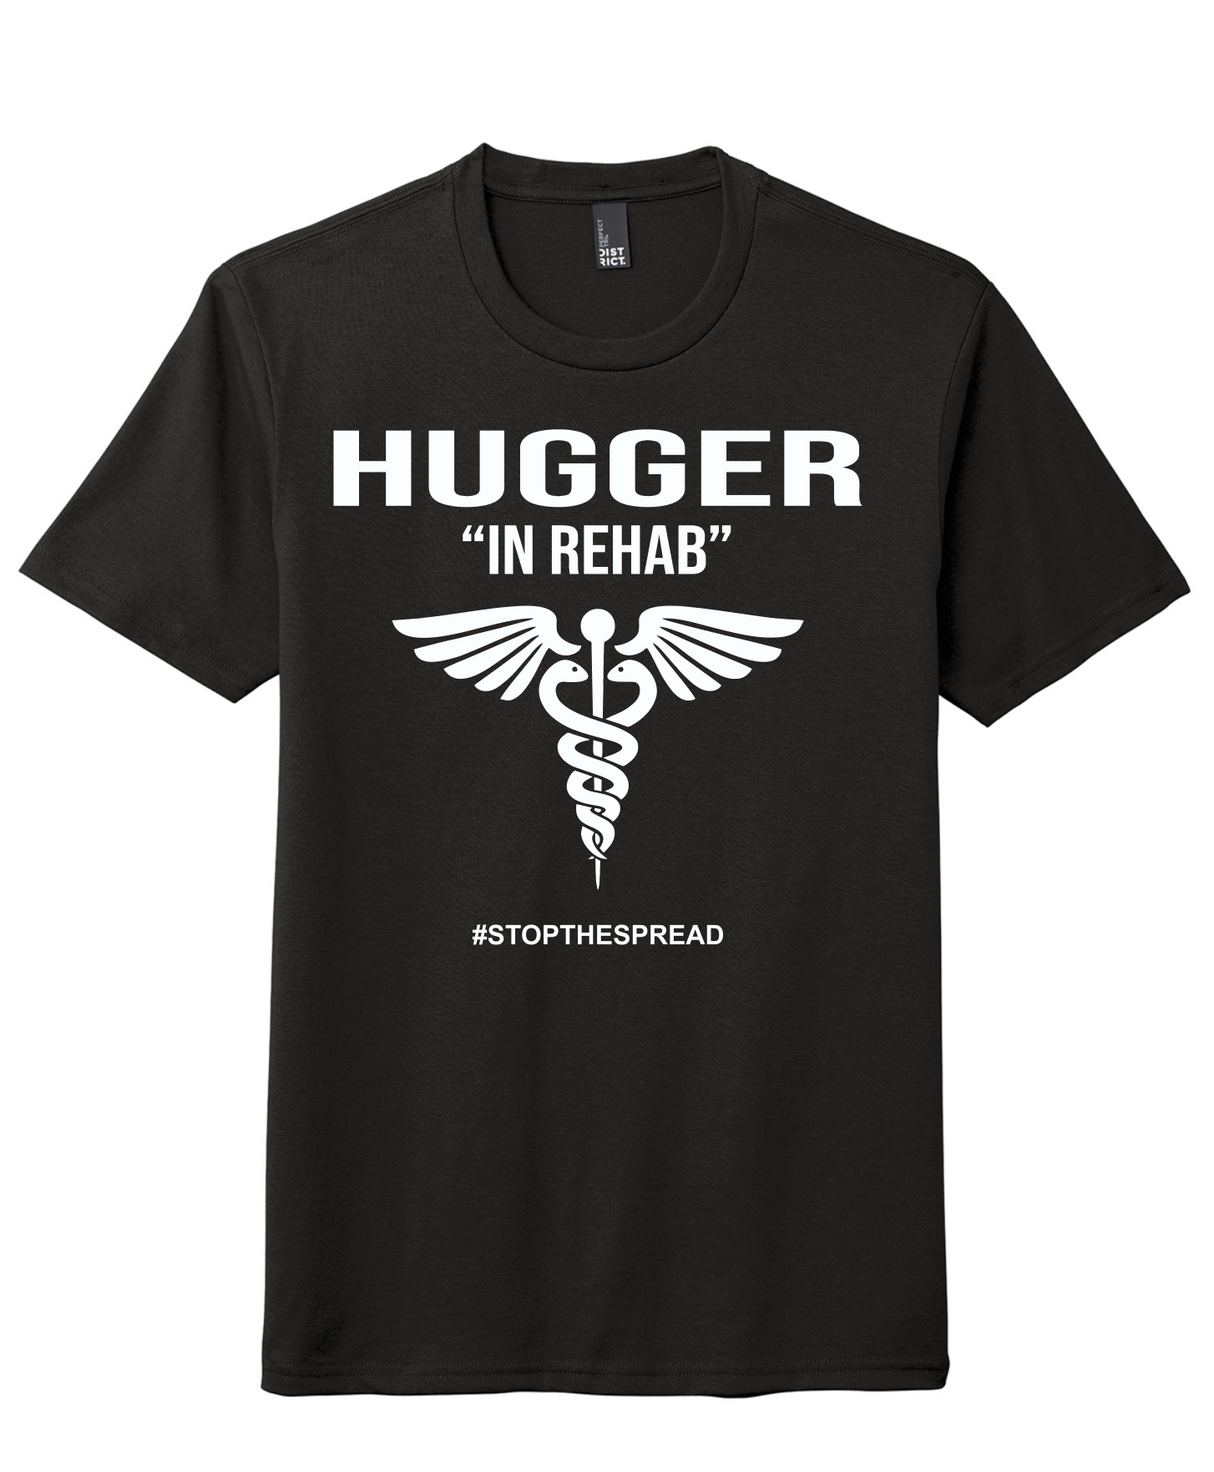 Hugger "In Rehab" Tee